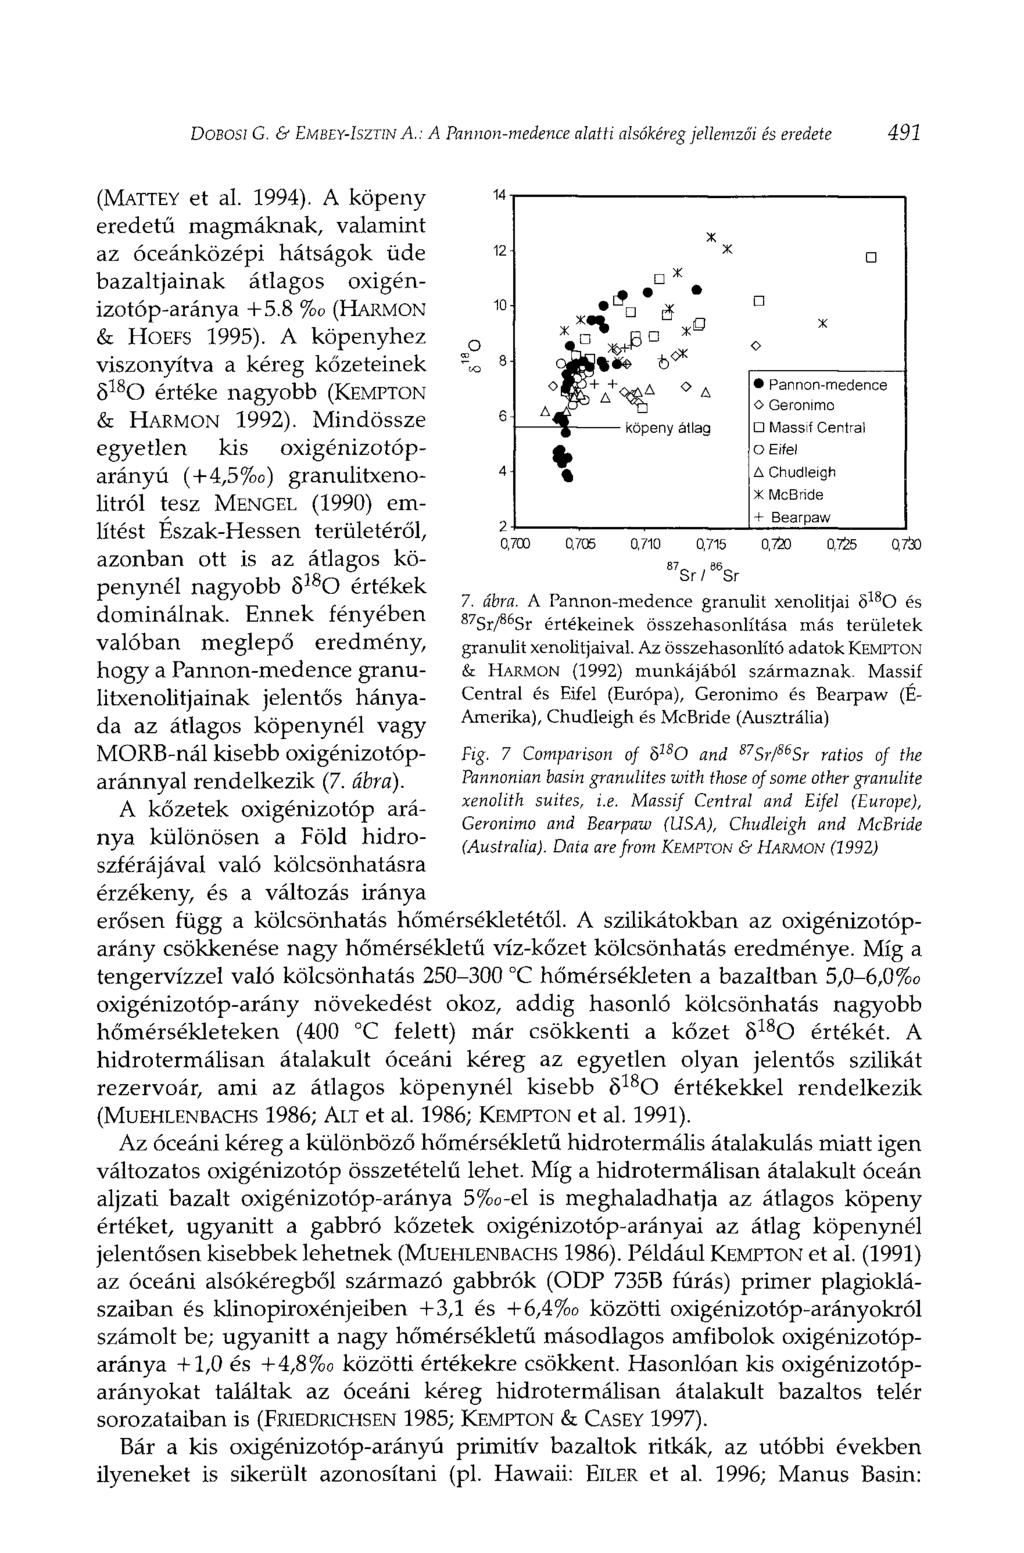 DOBOSI G. & EMBEY-ISZTIN A.: A Pannon-medence alatti alsókéreg jellemzői és eredete 491 (MATTEY et al. 1994).